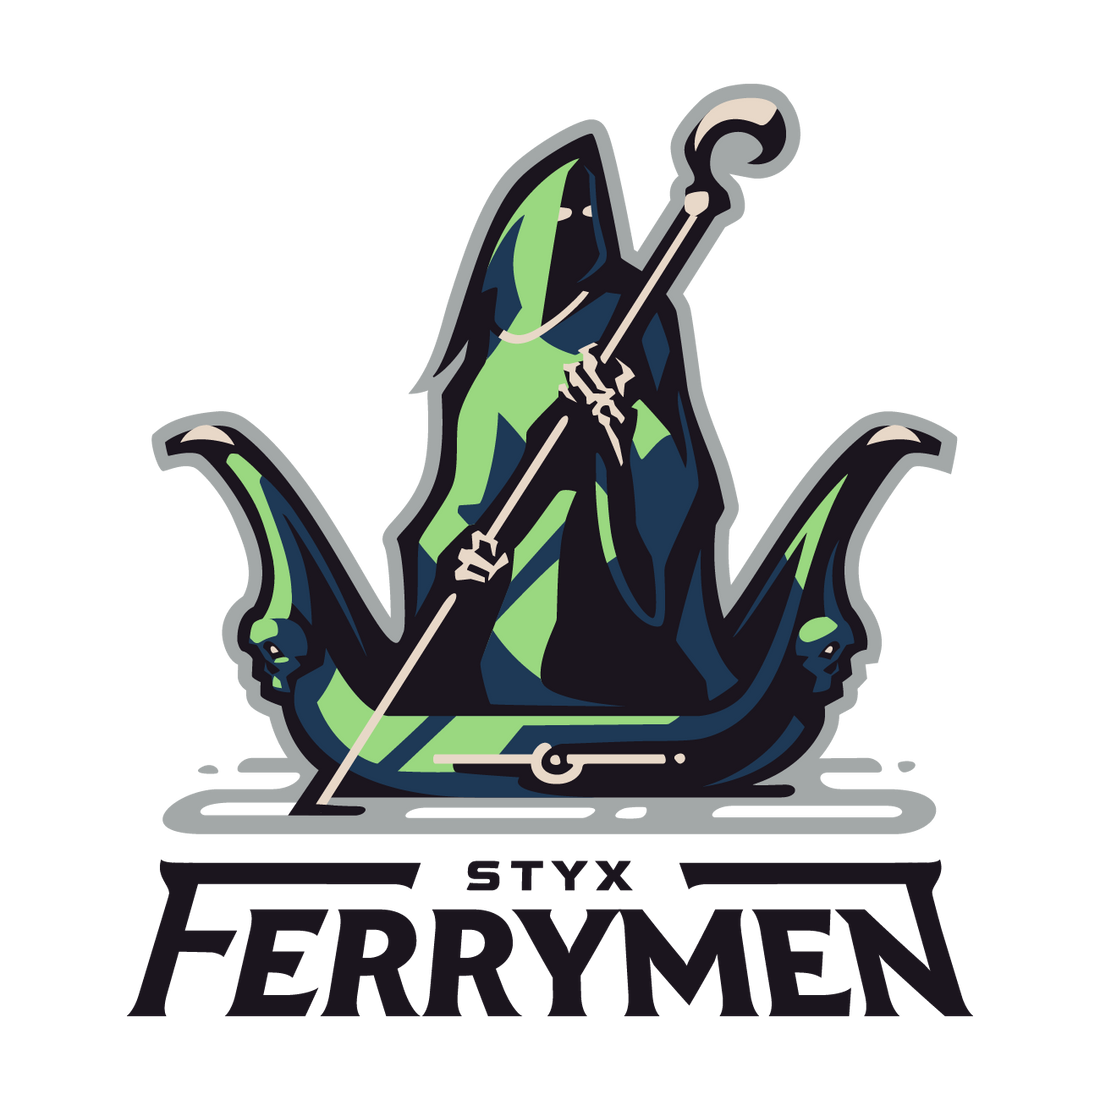 Styx Ferrymen - SMITE Pro League